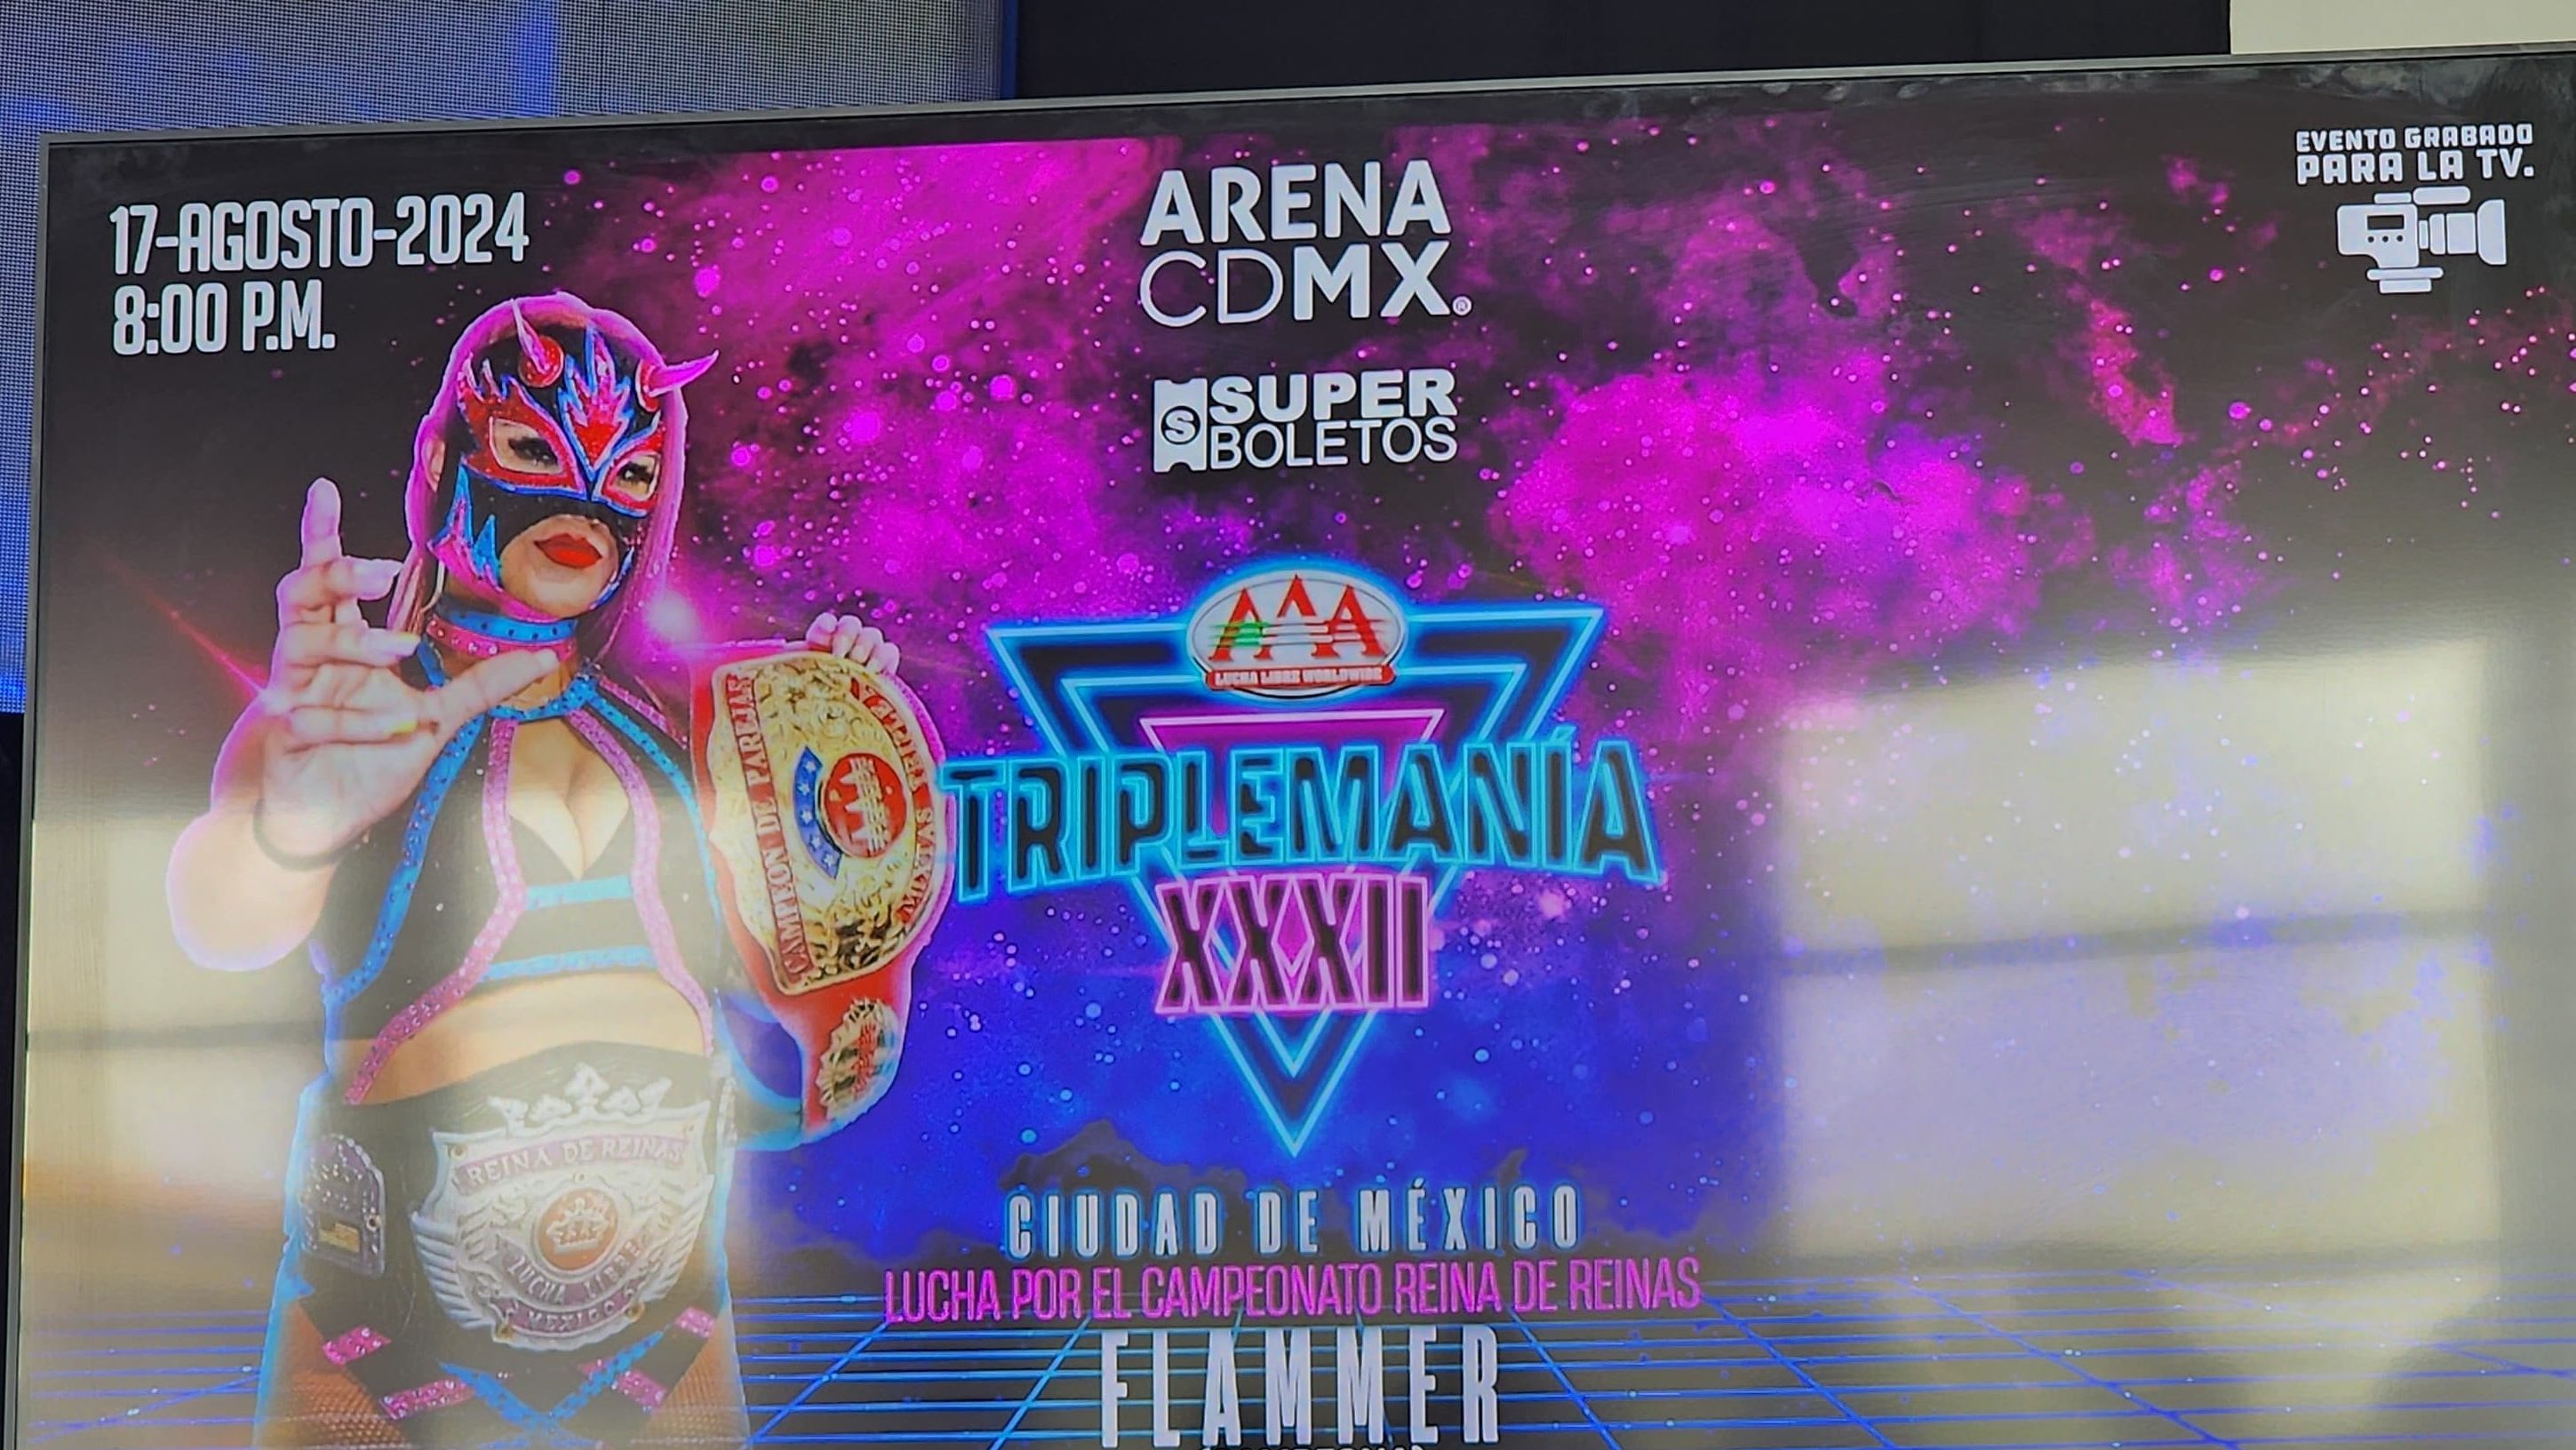 TRIPLEMANIA XXXII cierra su gira en la Arena CDMX el 17 de Agosto 4